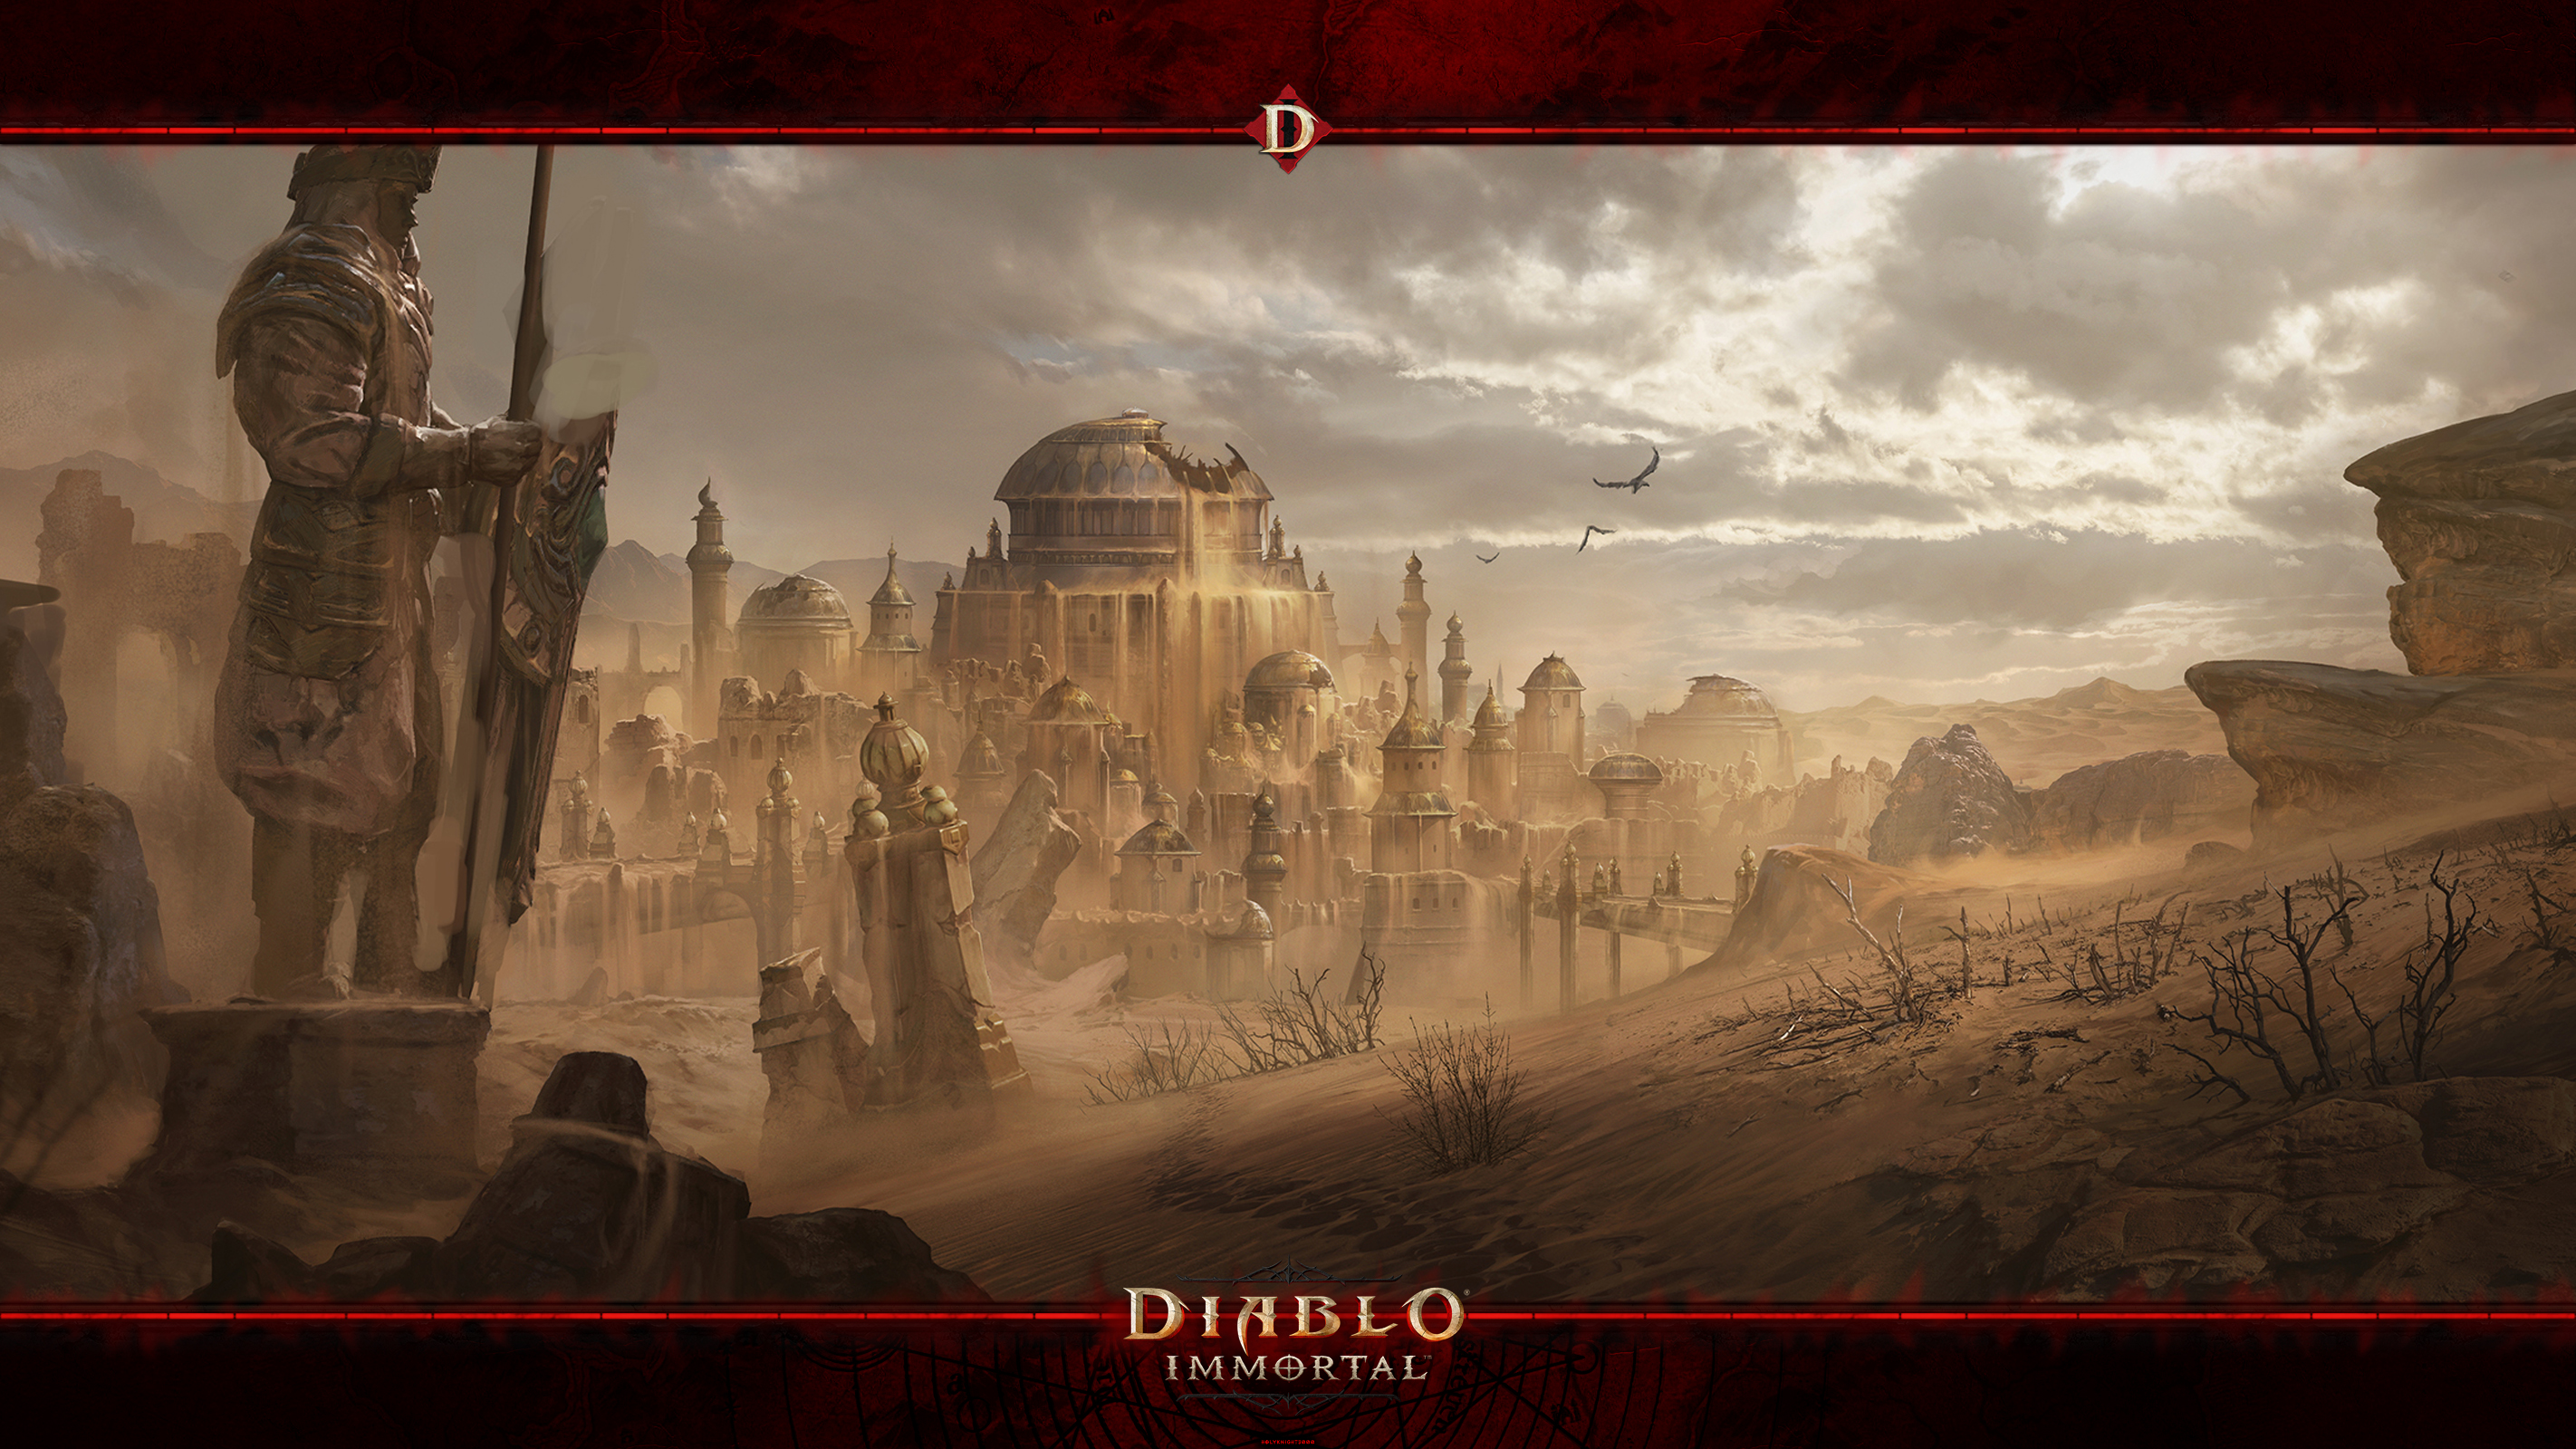 Diablo Immortal 2021 #8: The Shassar Sea